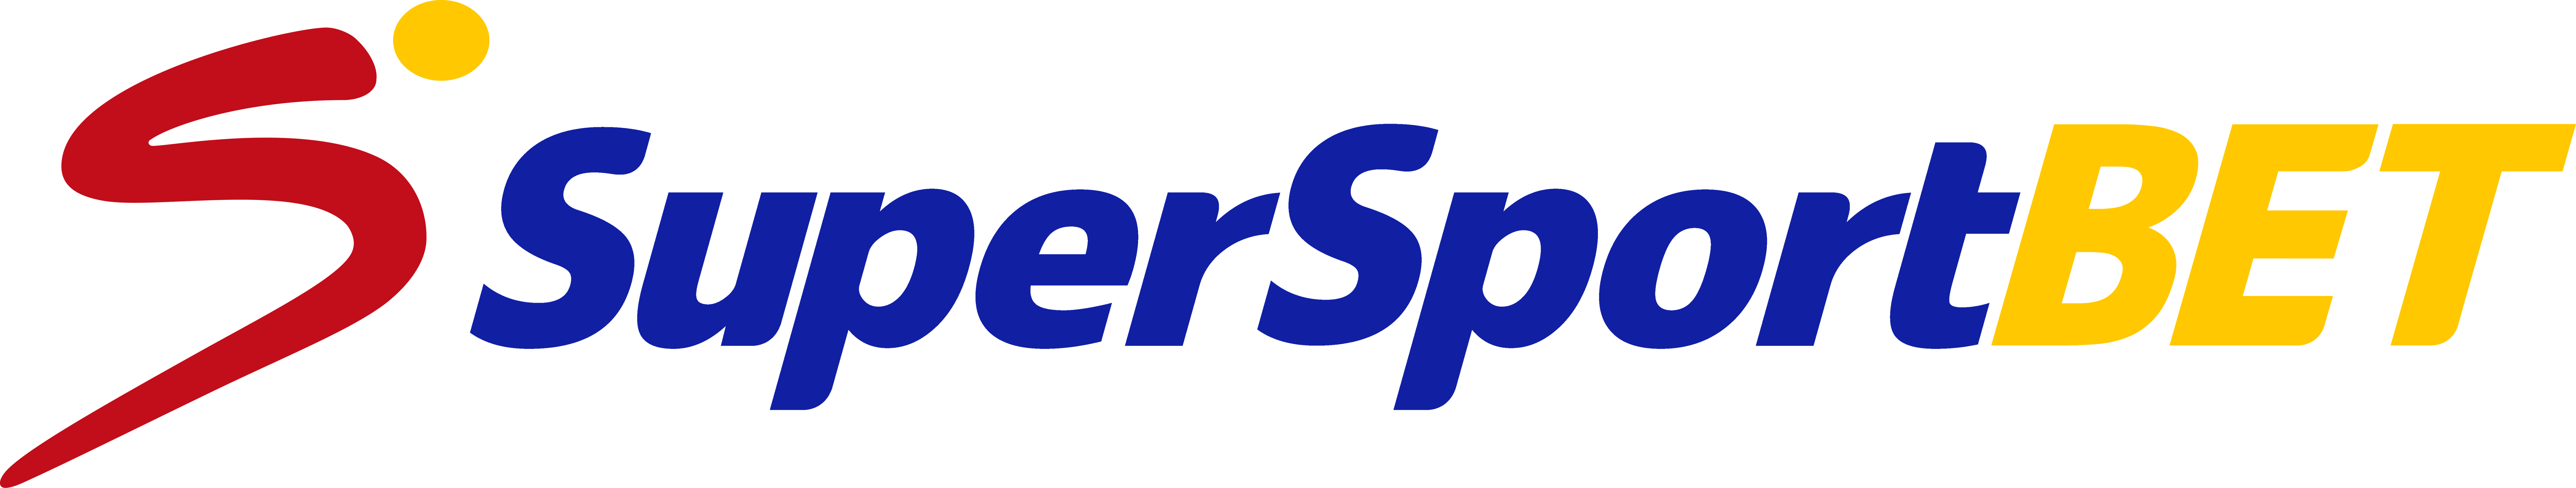 supersportbet logo